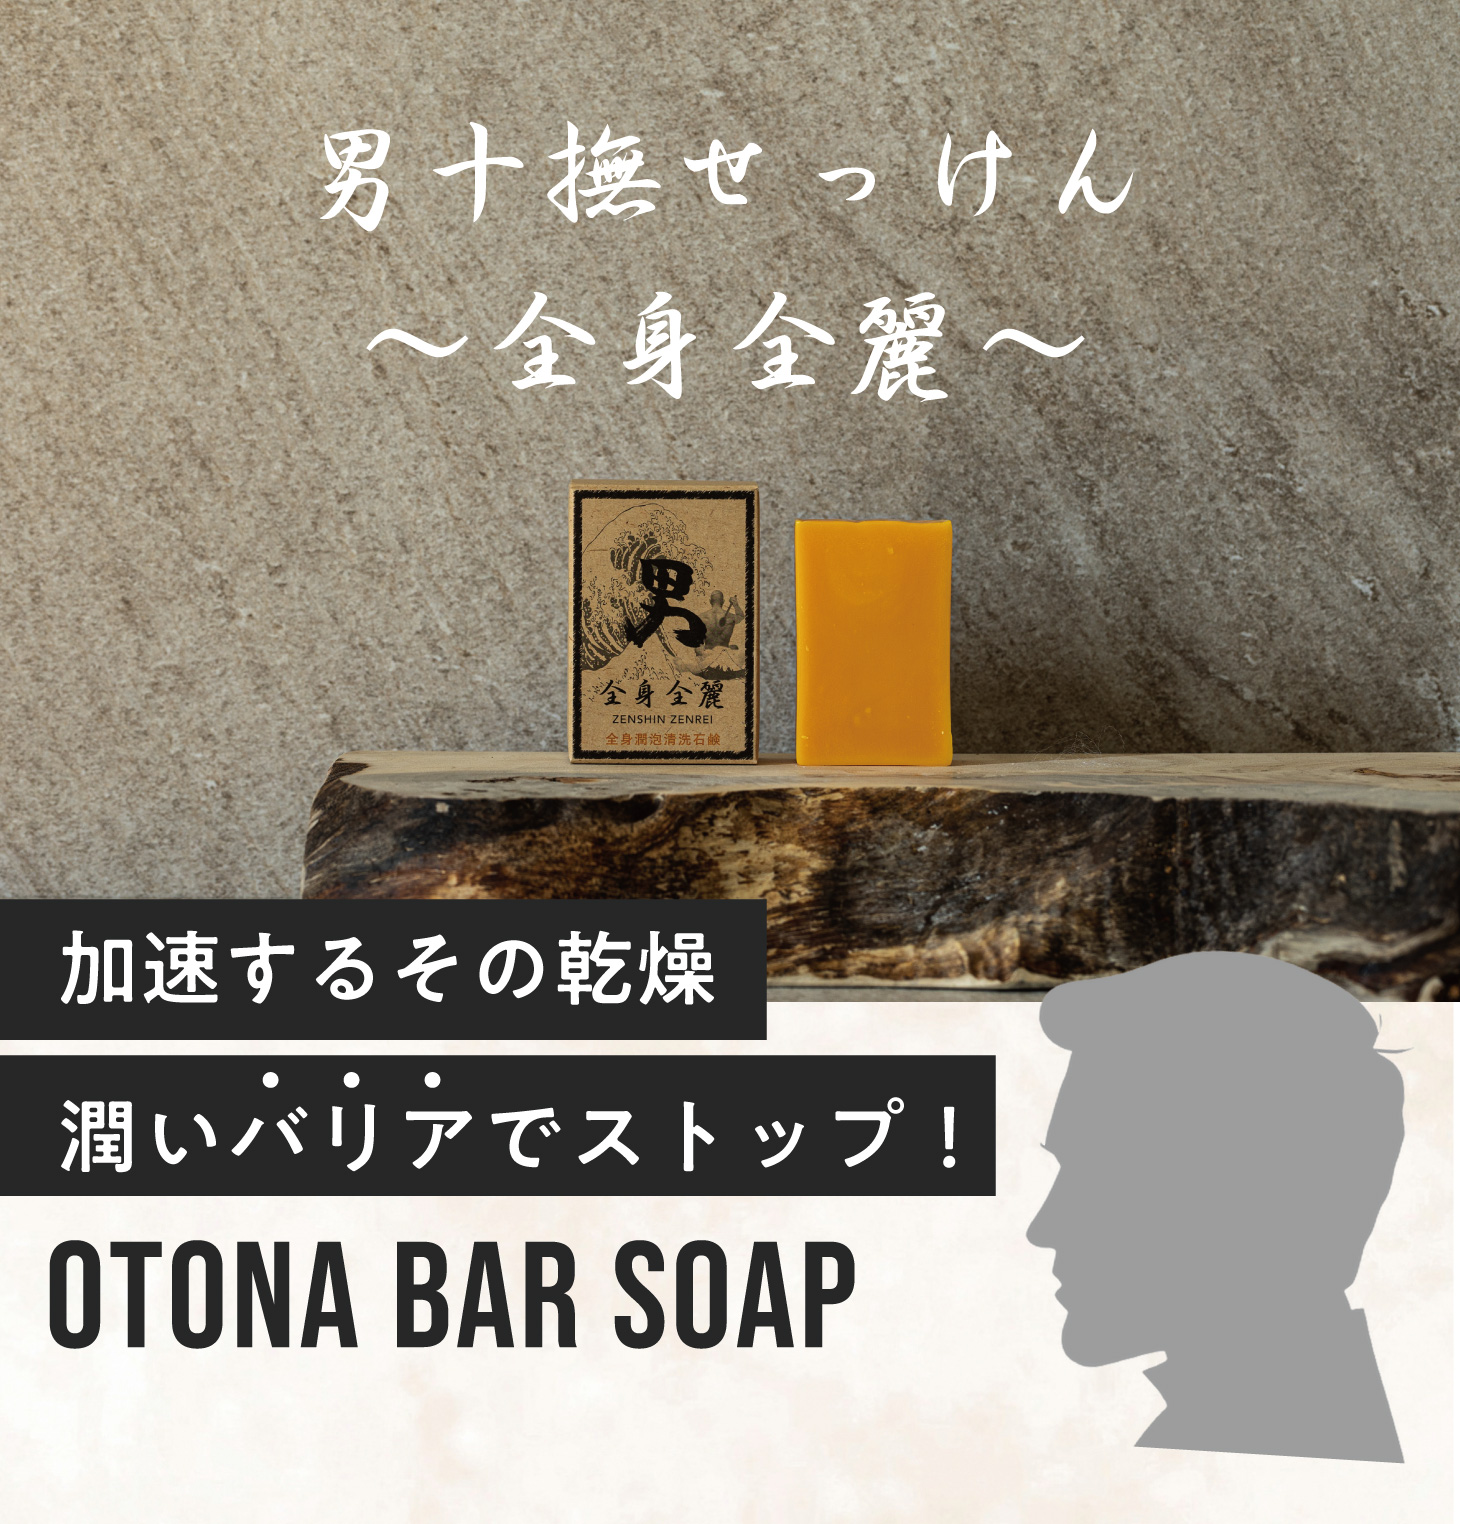 男十撫せっけん 〜全身全麗〜 うるおい対策 OTONA bar soap